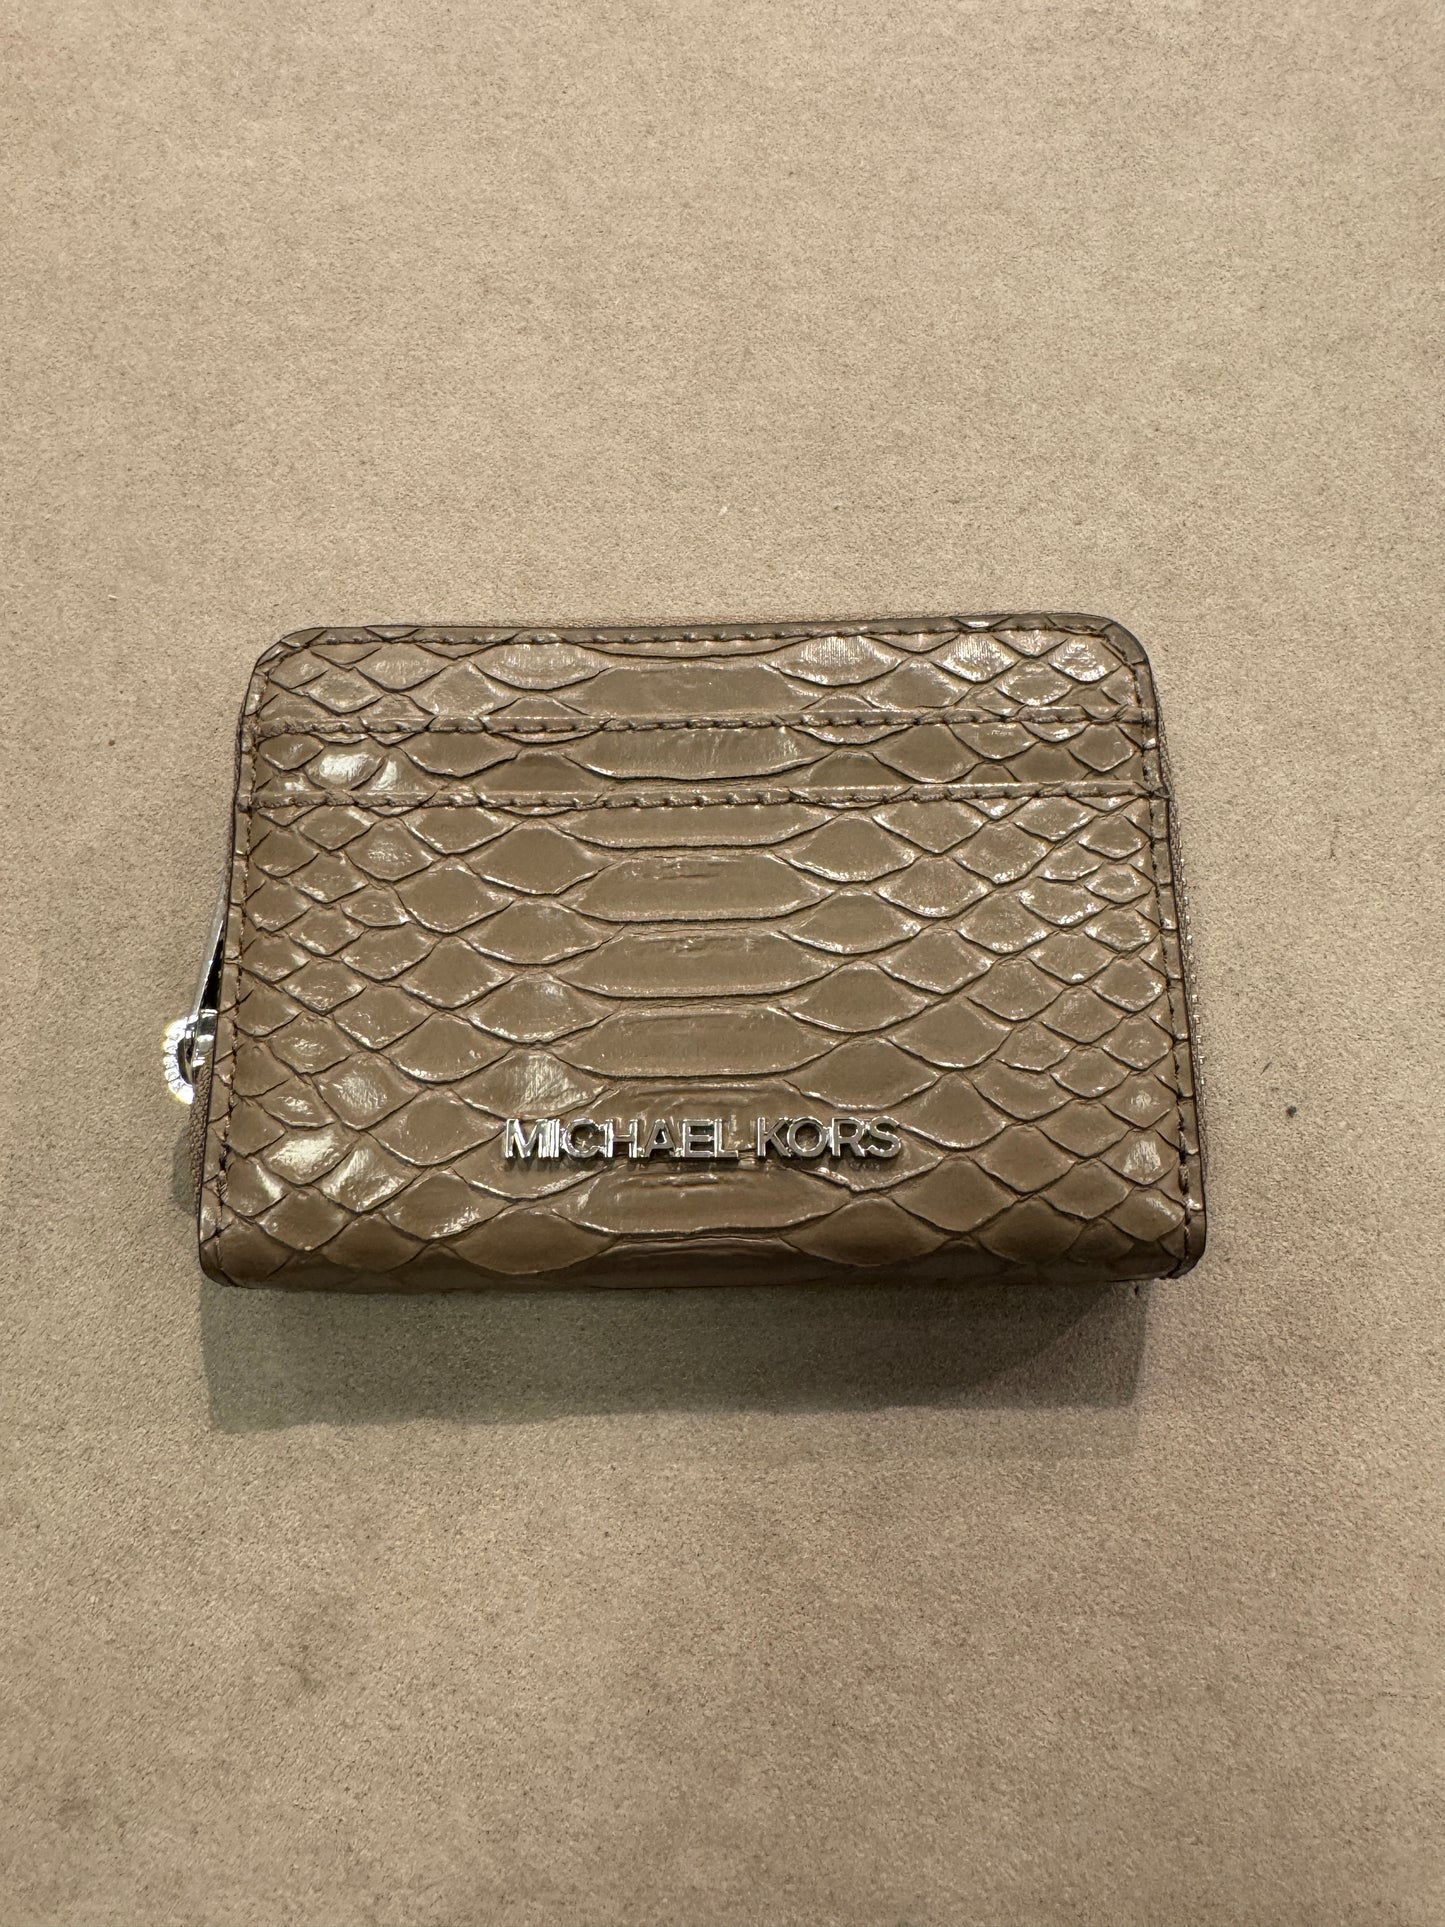 Michael Kors Medium Zip Around Card Case In Embossed Dusk (Pre-order)